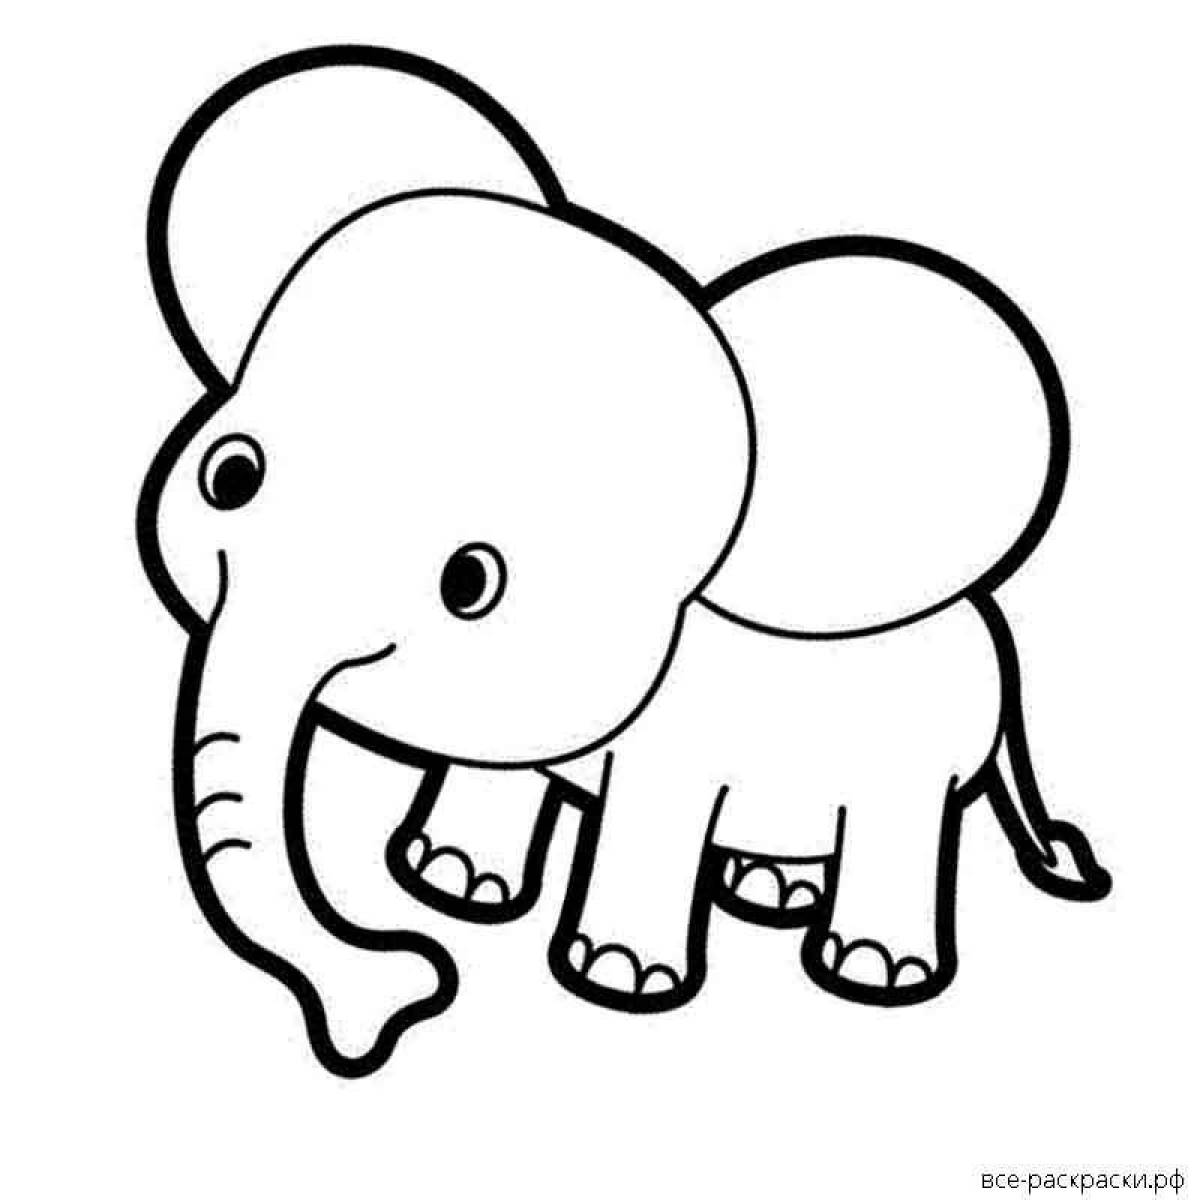 Красочная раскраска слона для детей 3-4 лет